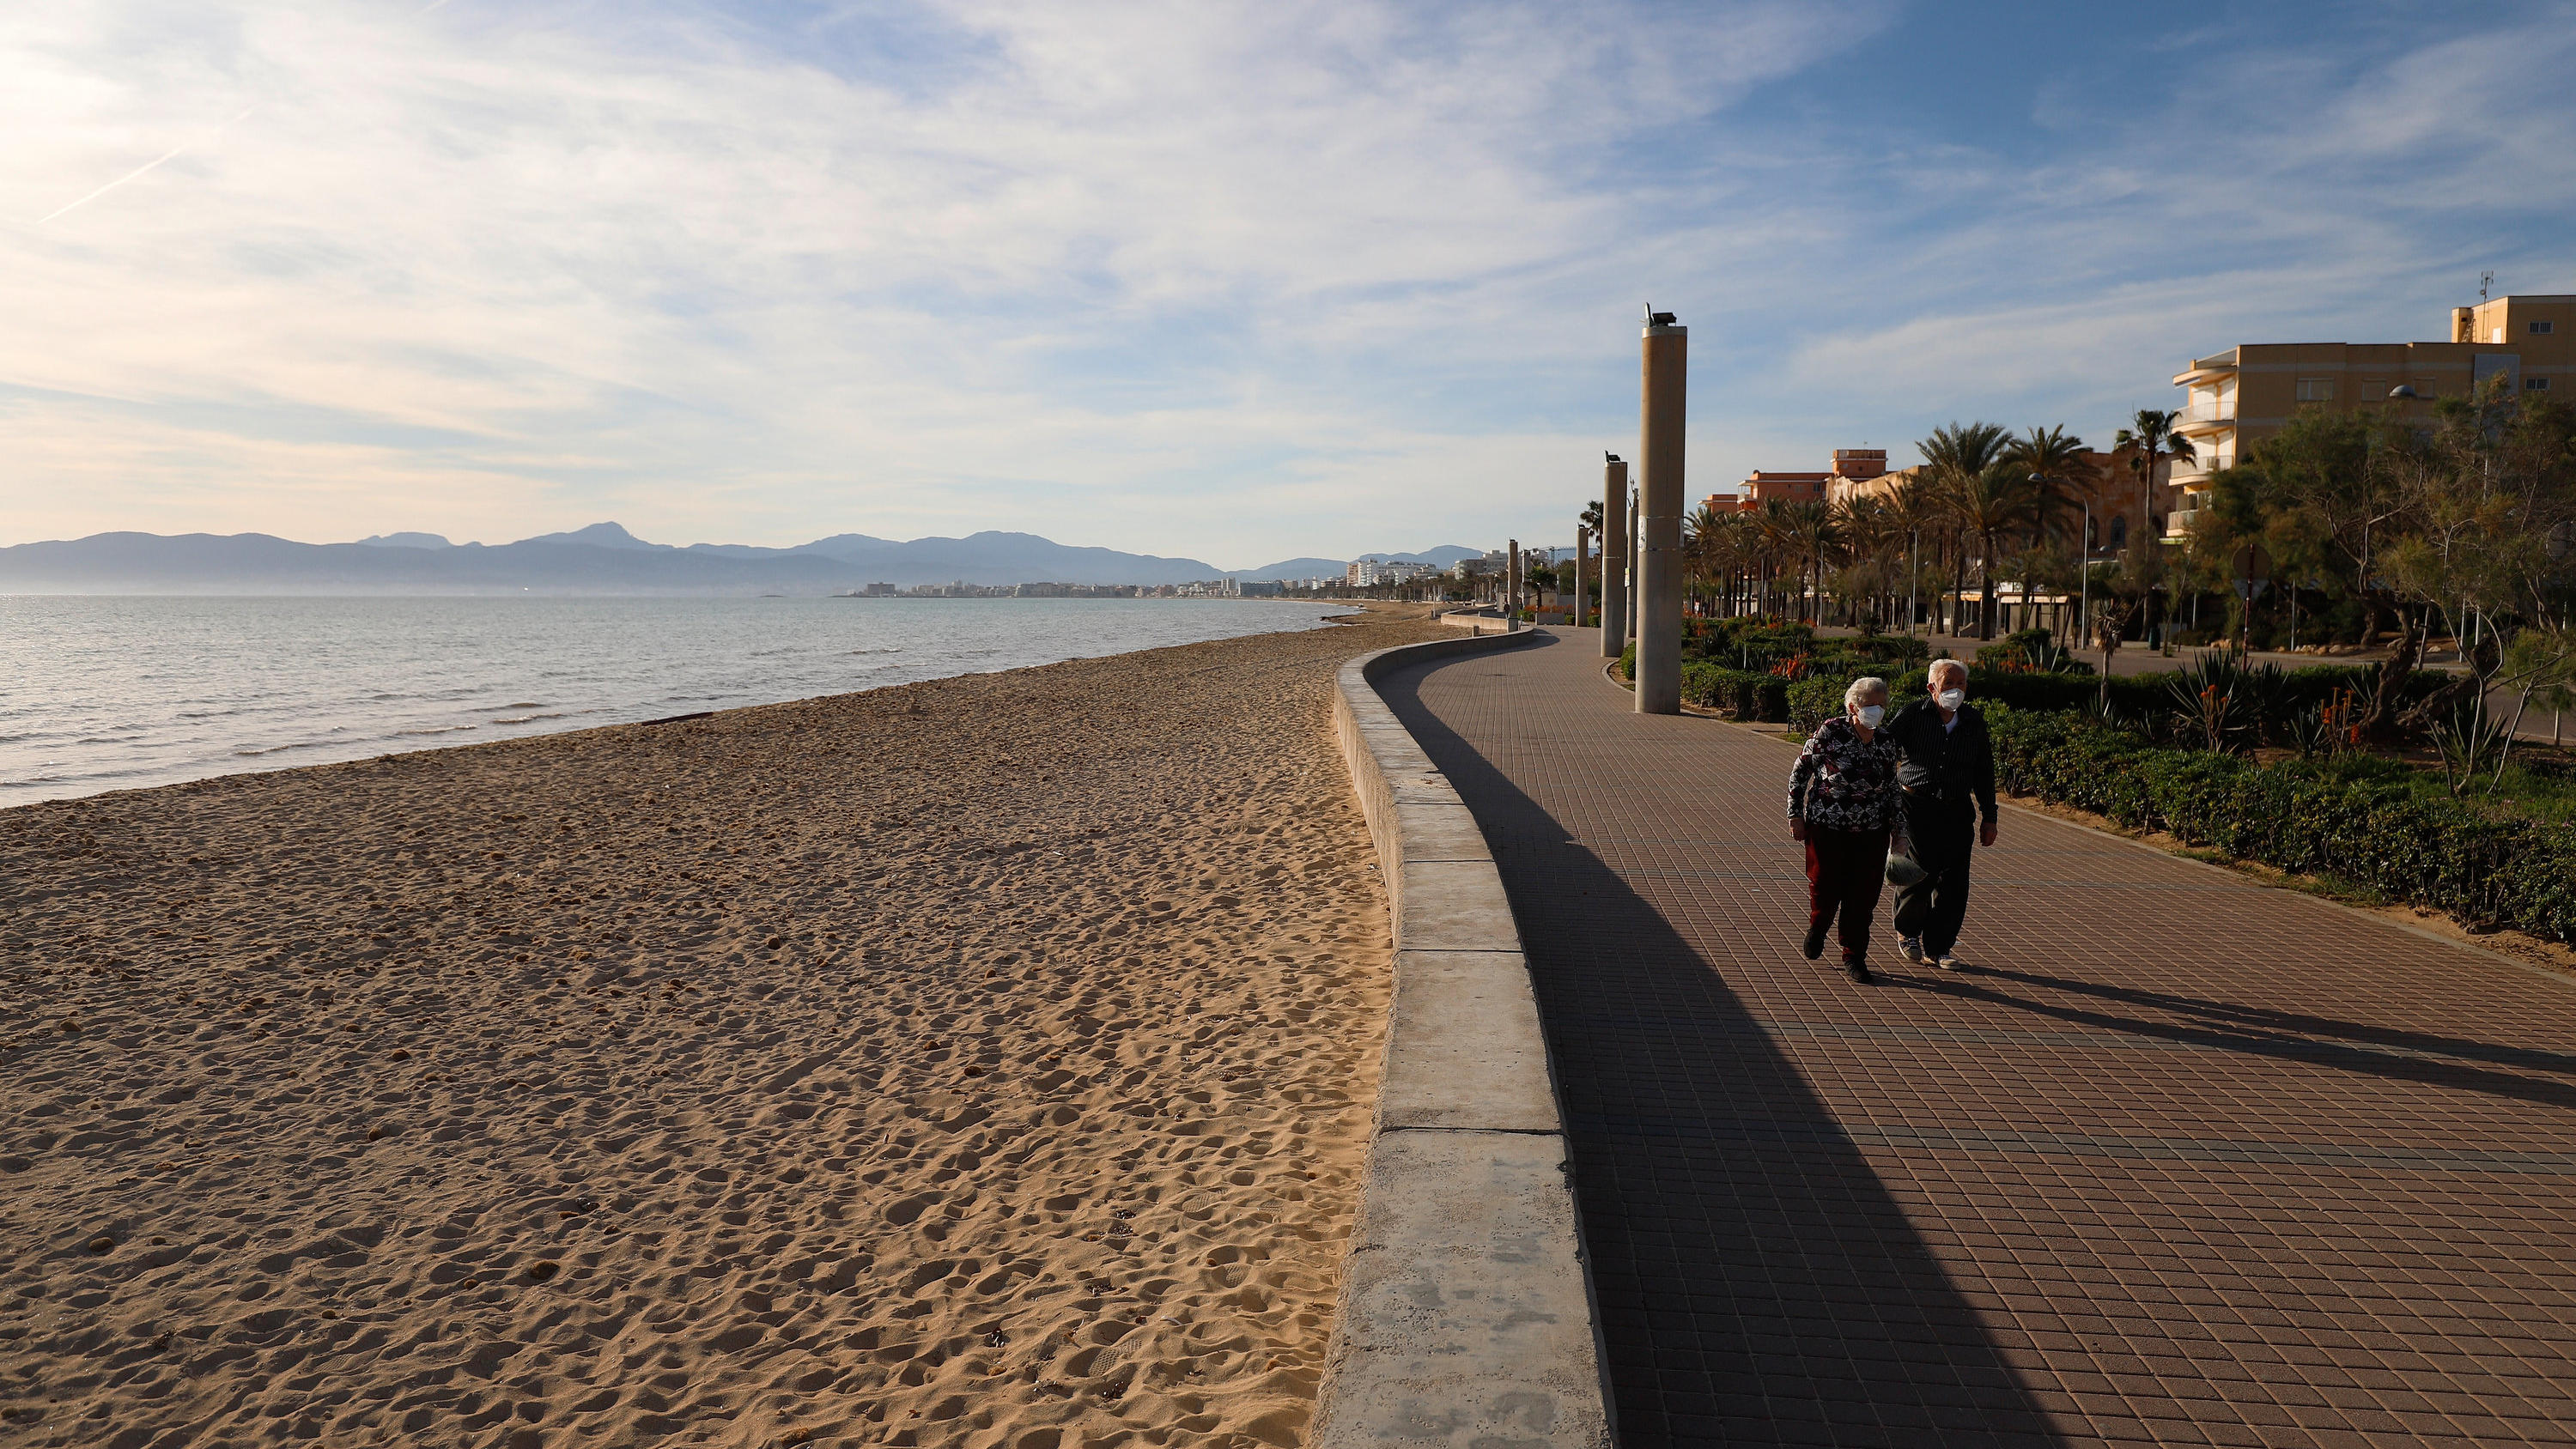 03.05.2020, Spanien, Palma: Ältere Menschen spazieren am Strand El Arenal in Palma de Mallorca. Die strenge Ausgangssperre zur Eindämmung der Corona-Pandemie ist in Spanien nach knapp sieben Wochen für Freizeitaktivitäten gelockert worden. Die Bürger